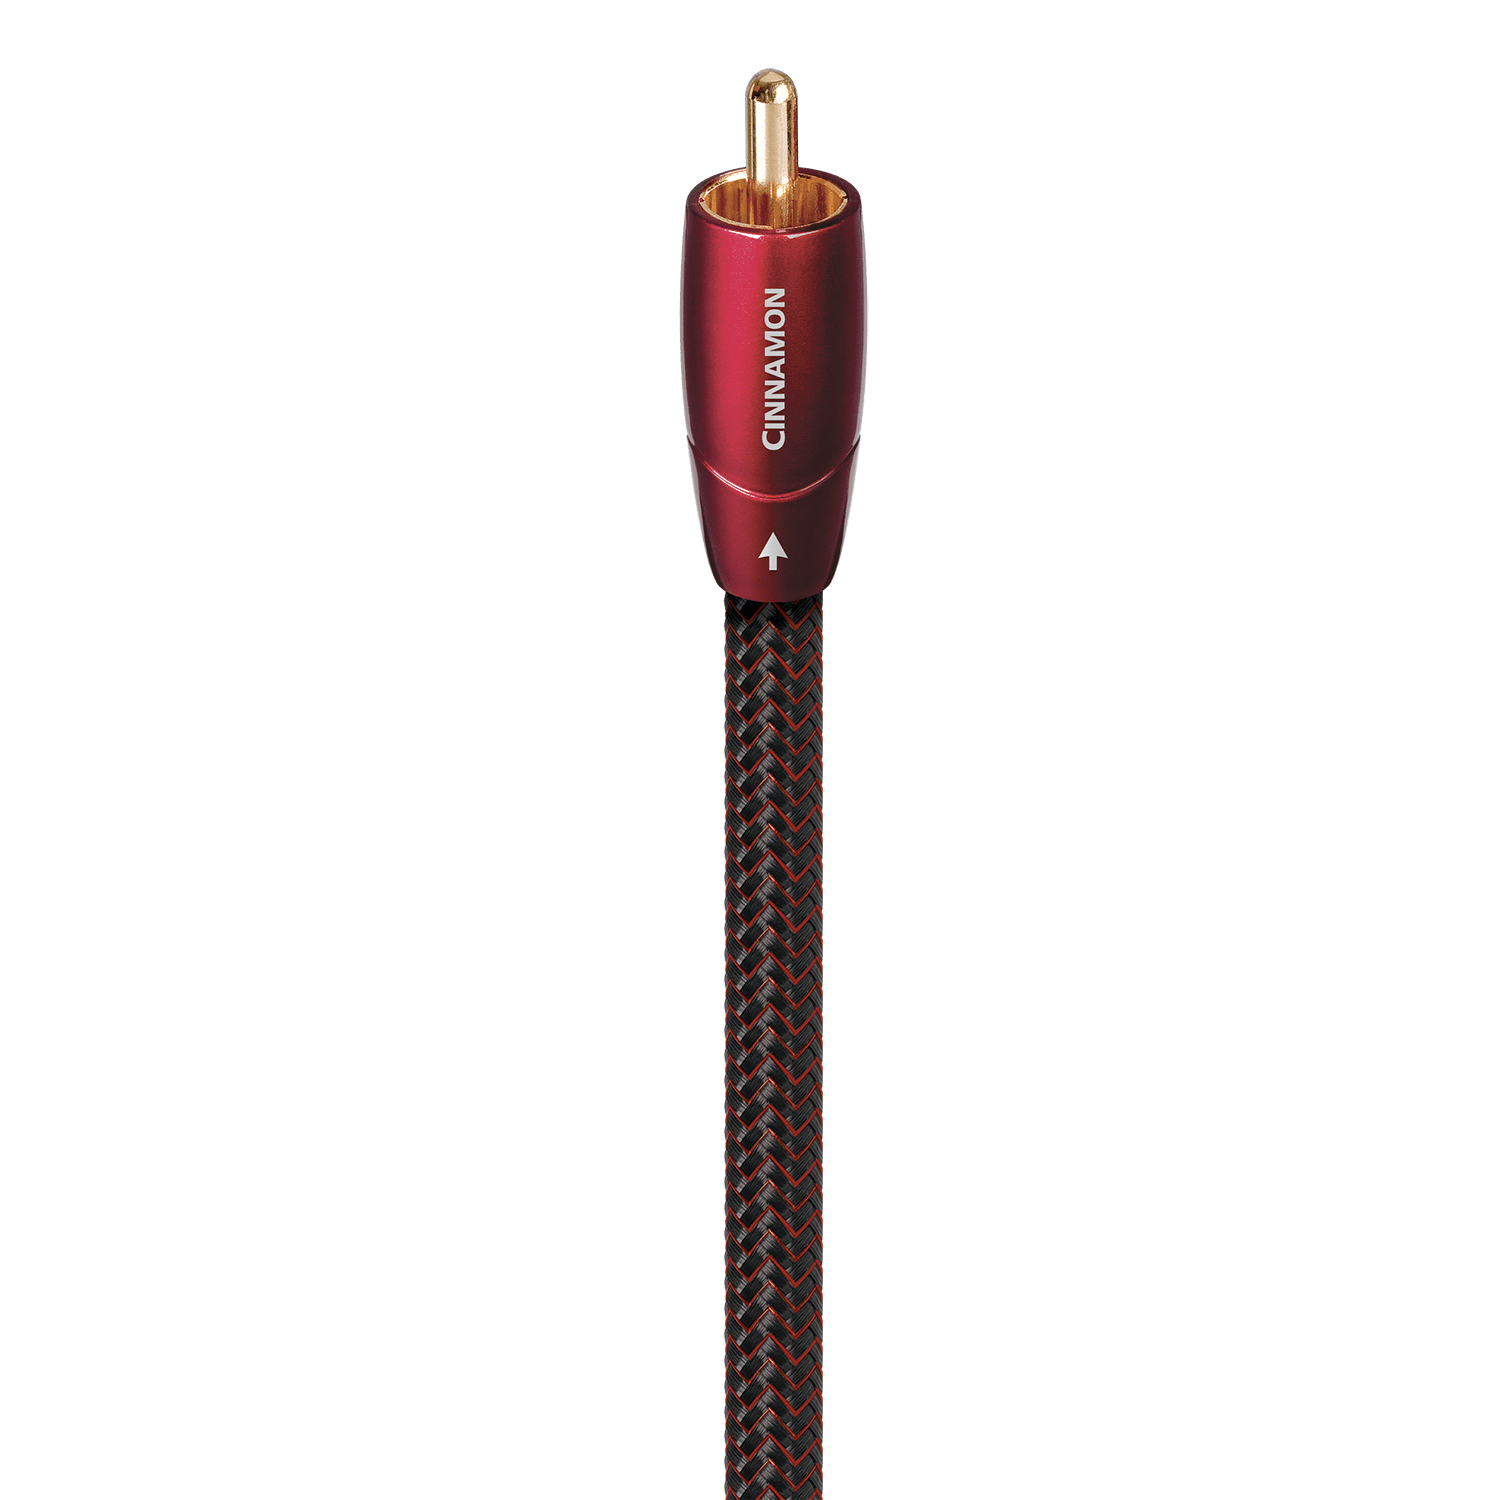 AudioQuest Cinnamon Coax Digital Audio Cable - 0.75M (2' 6)